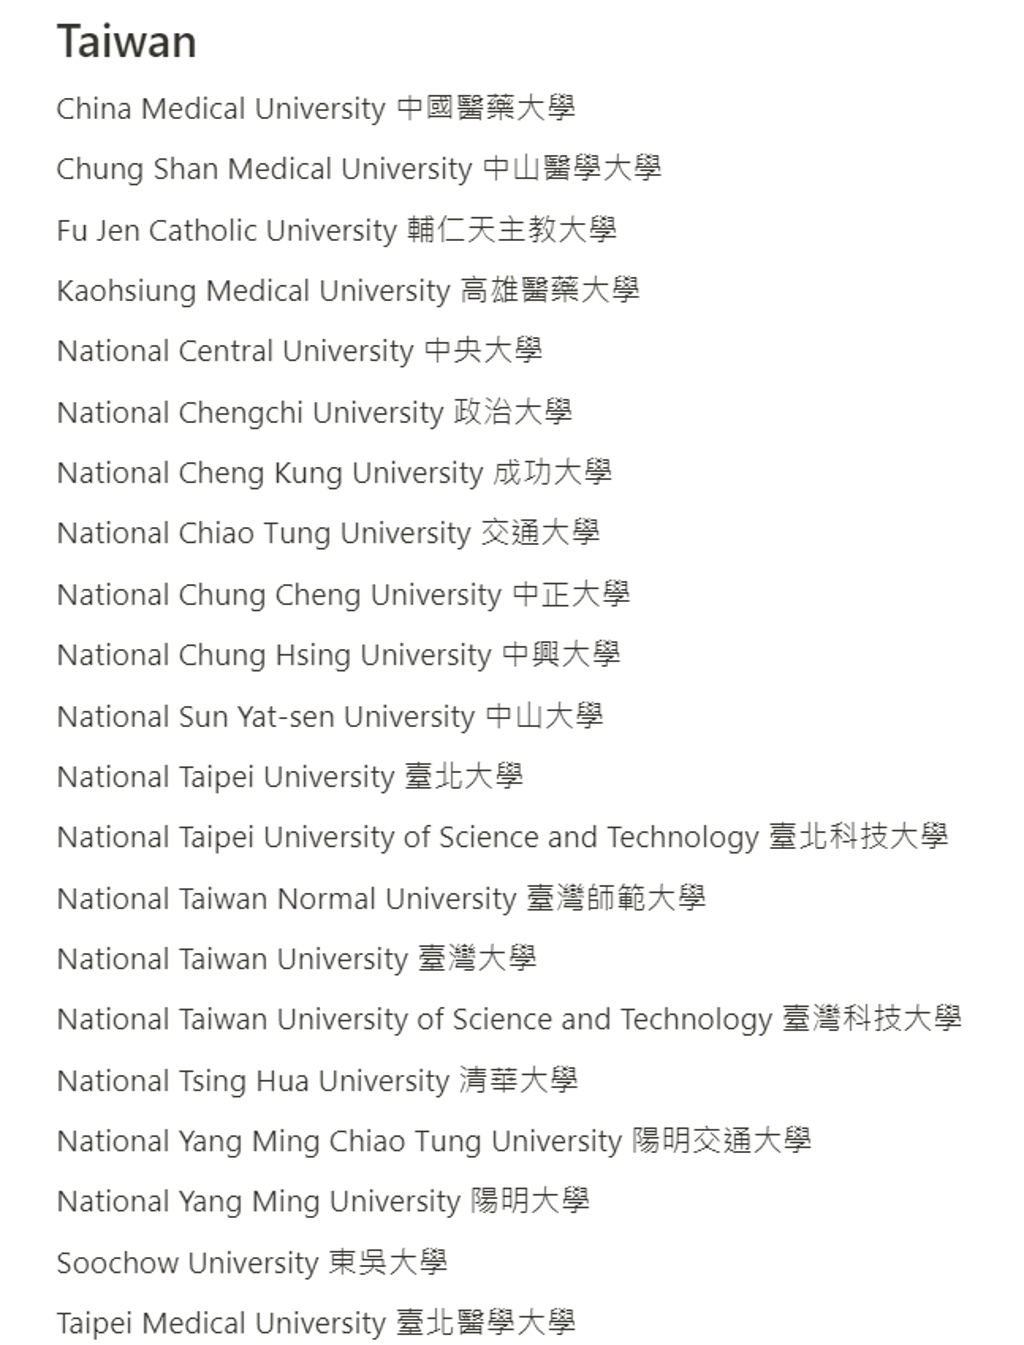 台灣僅21間大學能使用WorkHeart。(圖/翻攝自WorkHeart官網)
